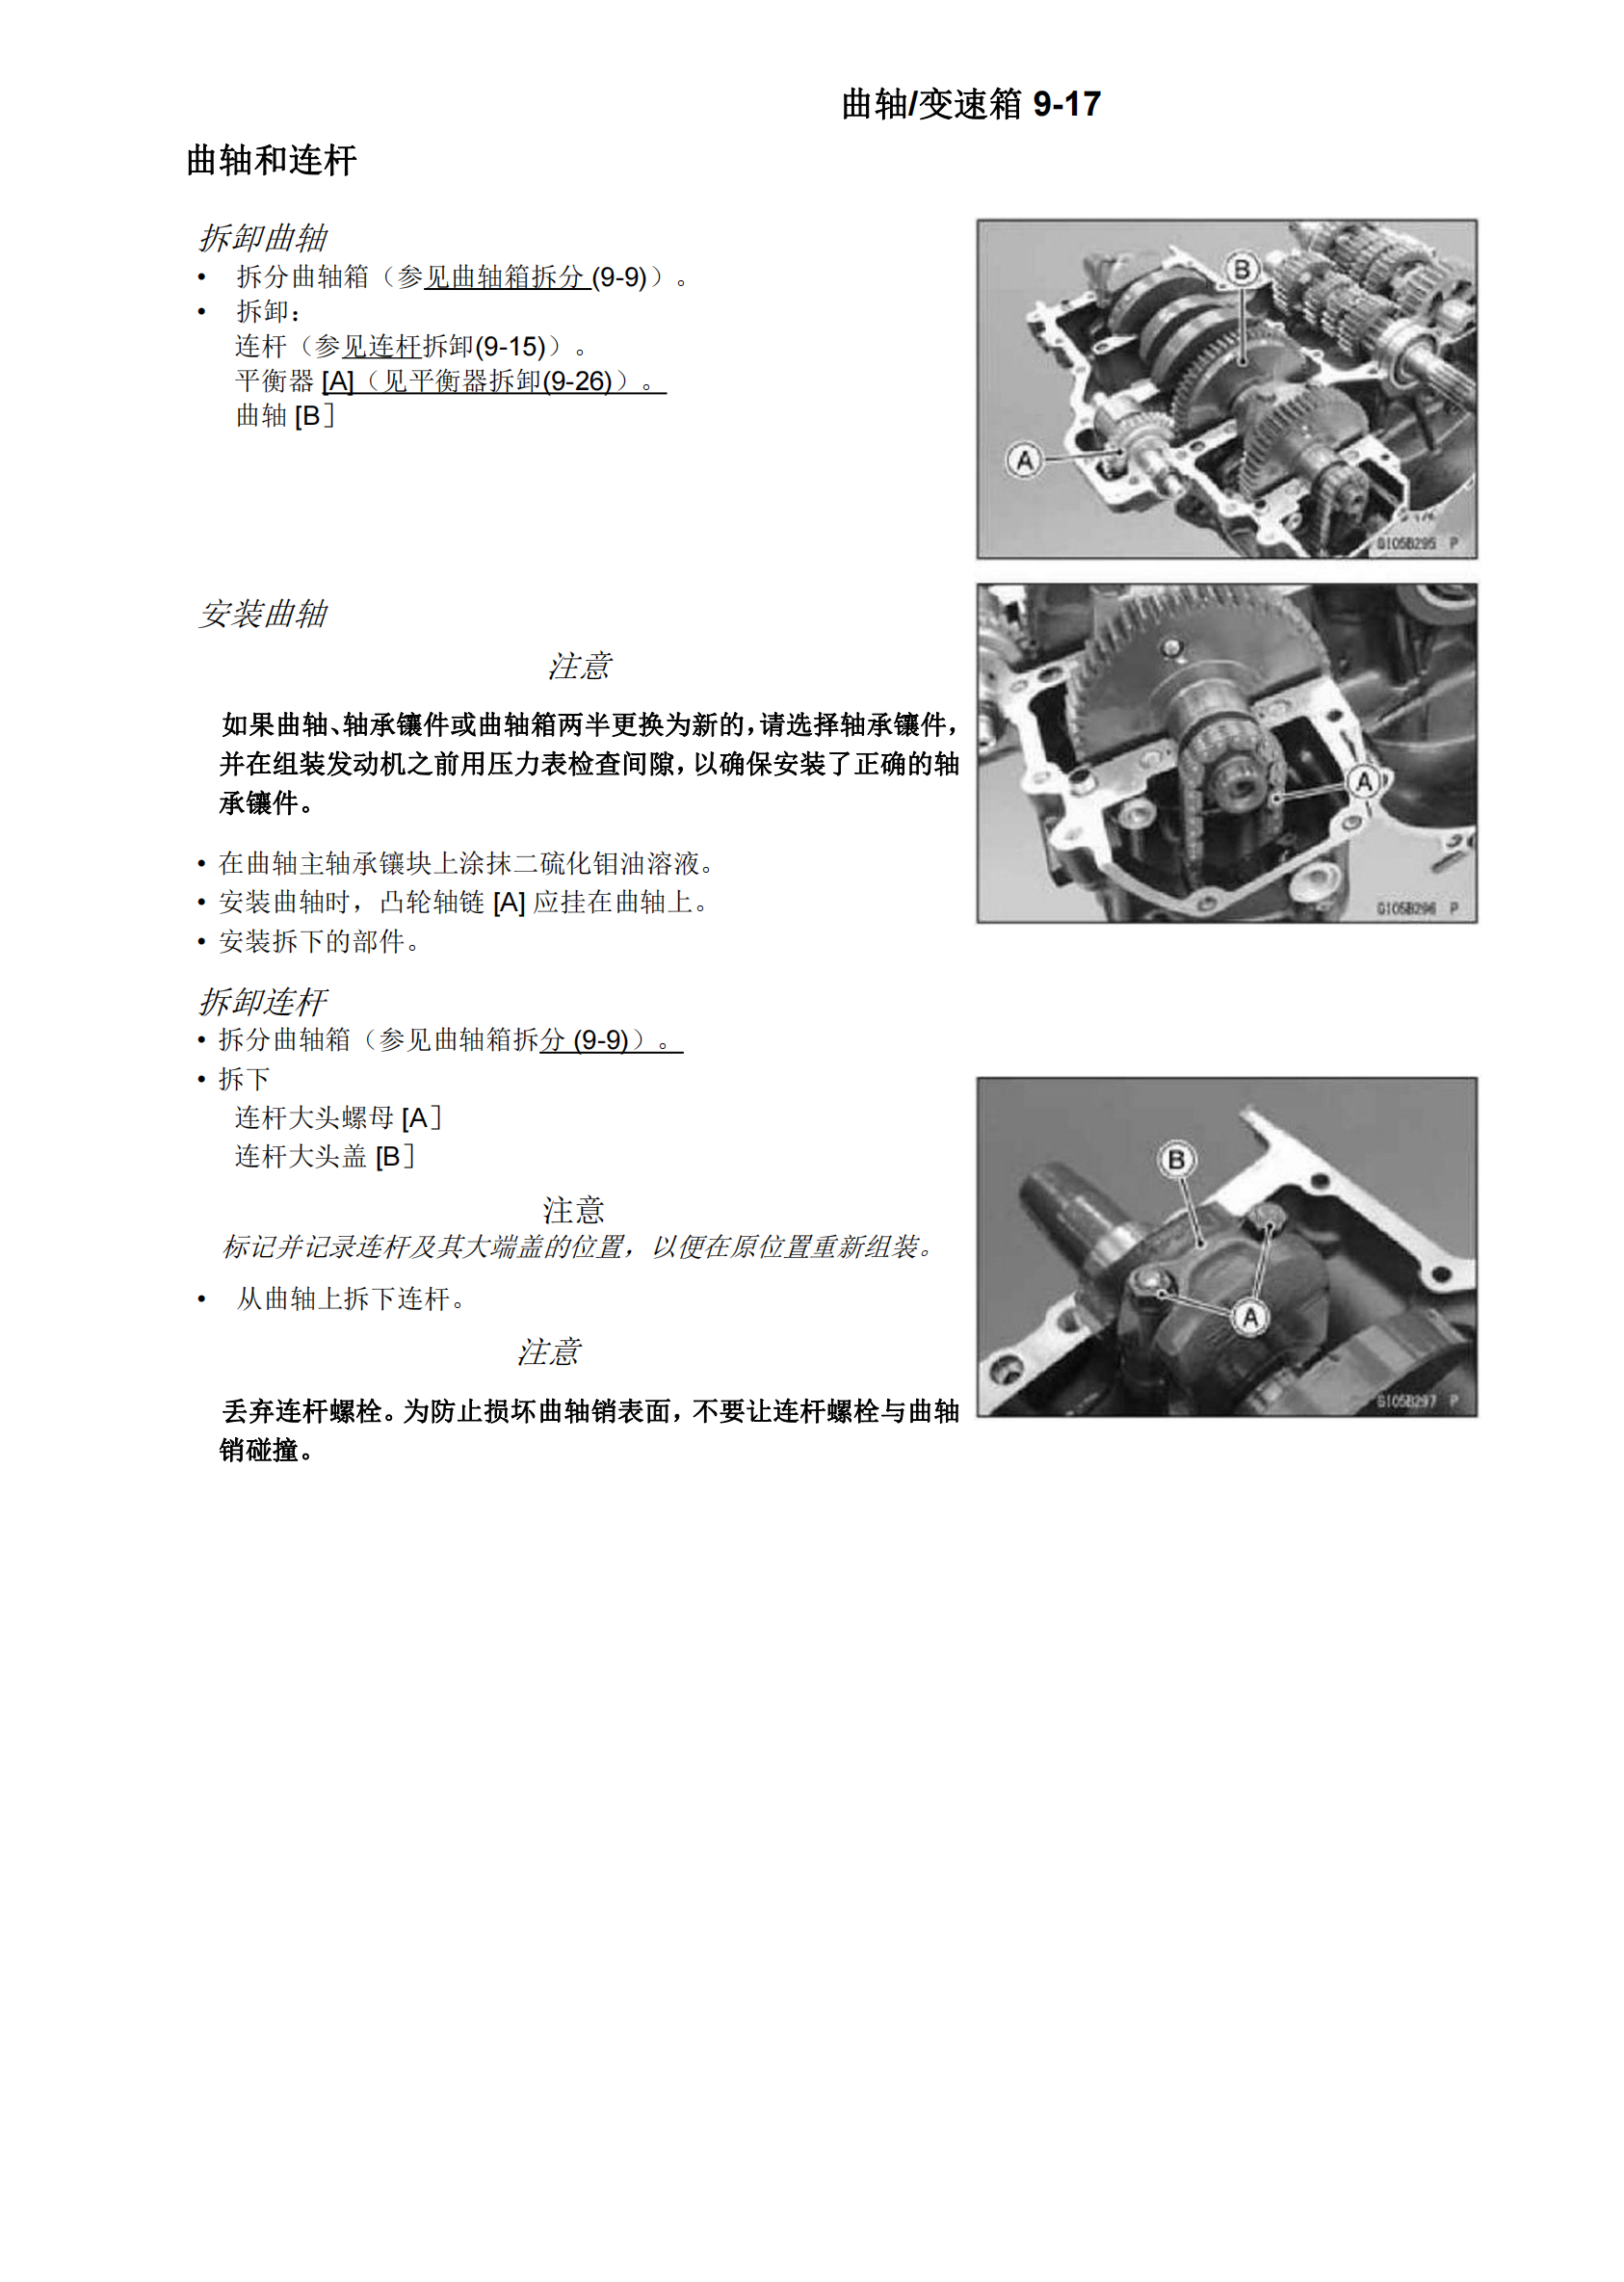 简体中文2018-2022年川崎Z900RS kawasaki z900rs维修手册插图4